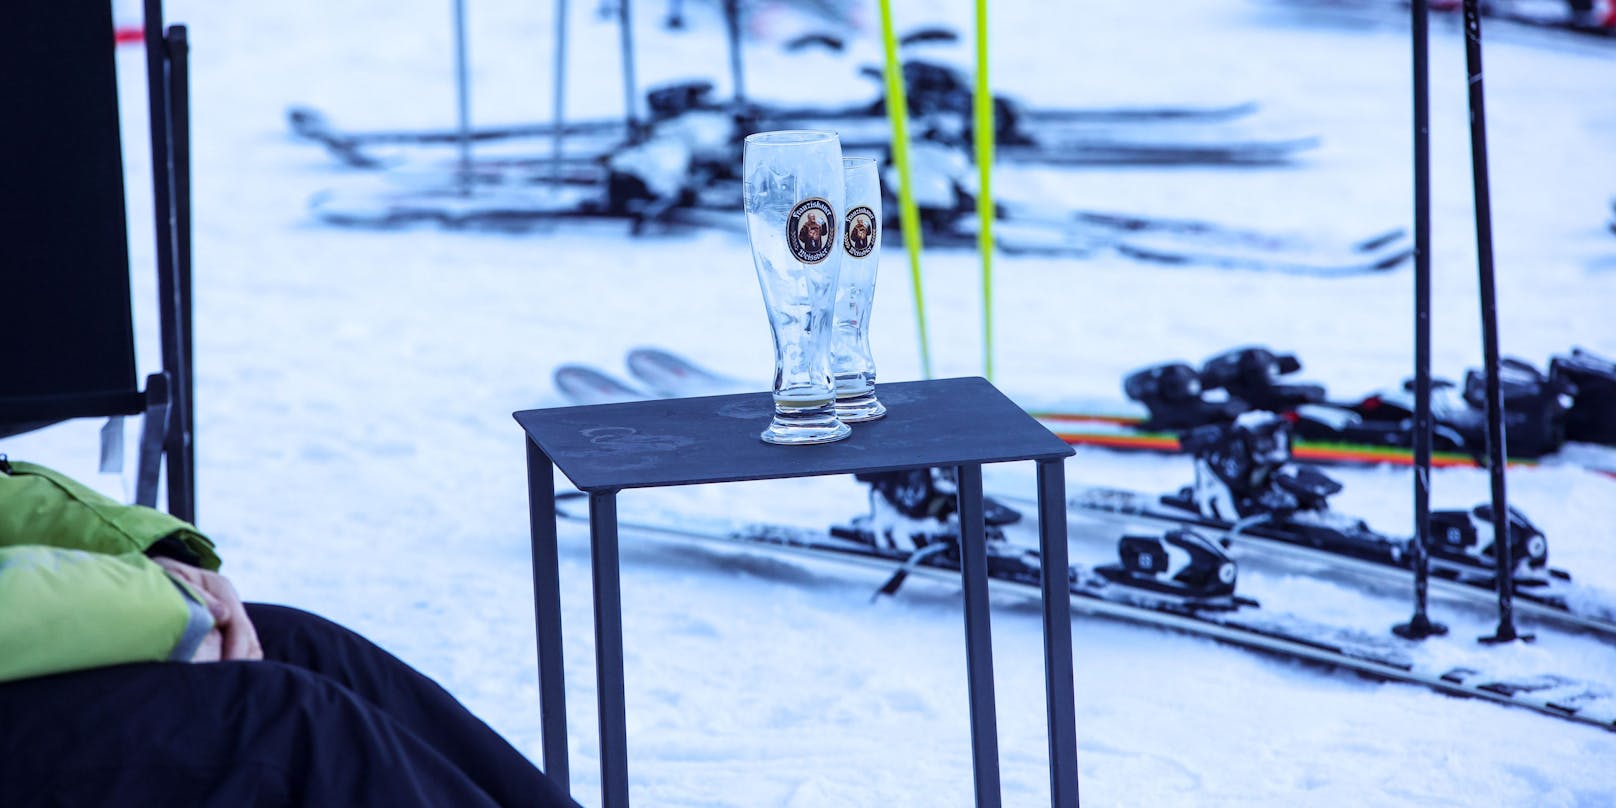 Après-Ski ist für viele Fixbestand beim Winterurlaub, doch nicht allen tut das unbedingt gut. (Symbolbild)